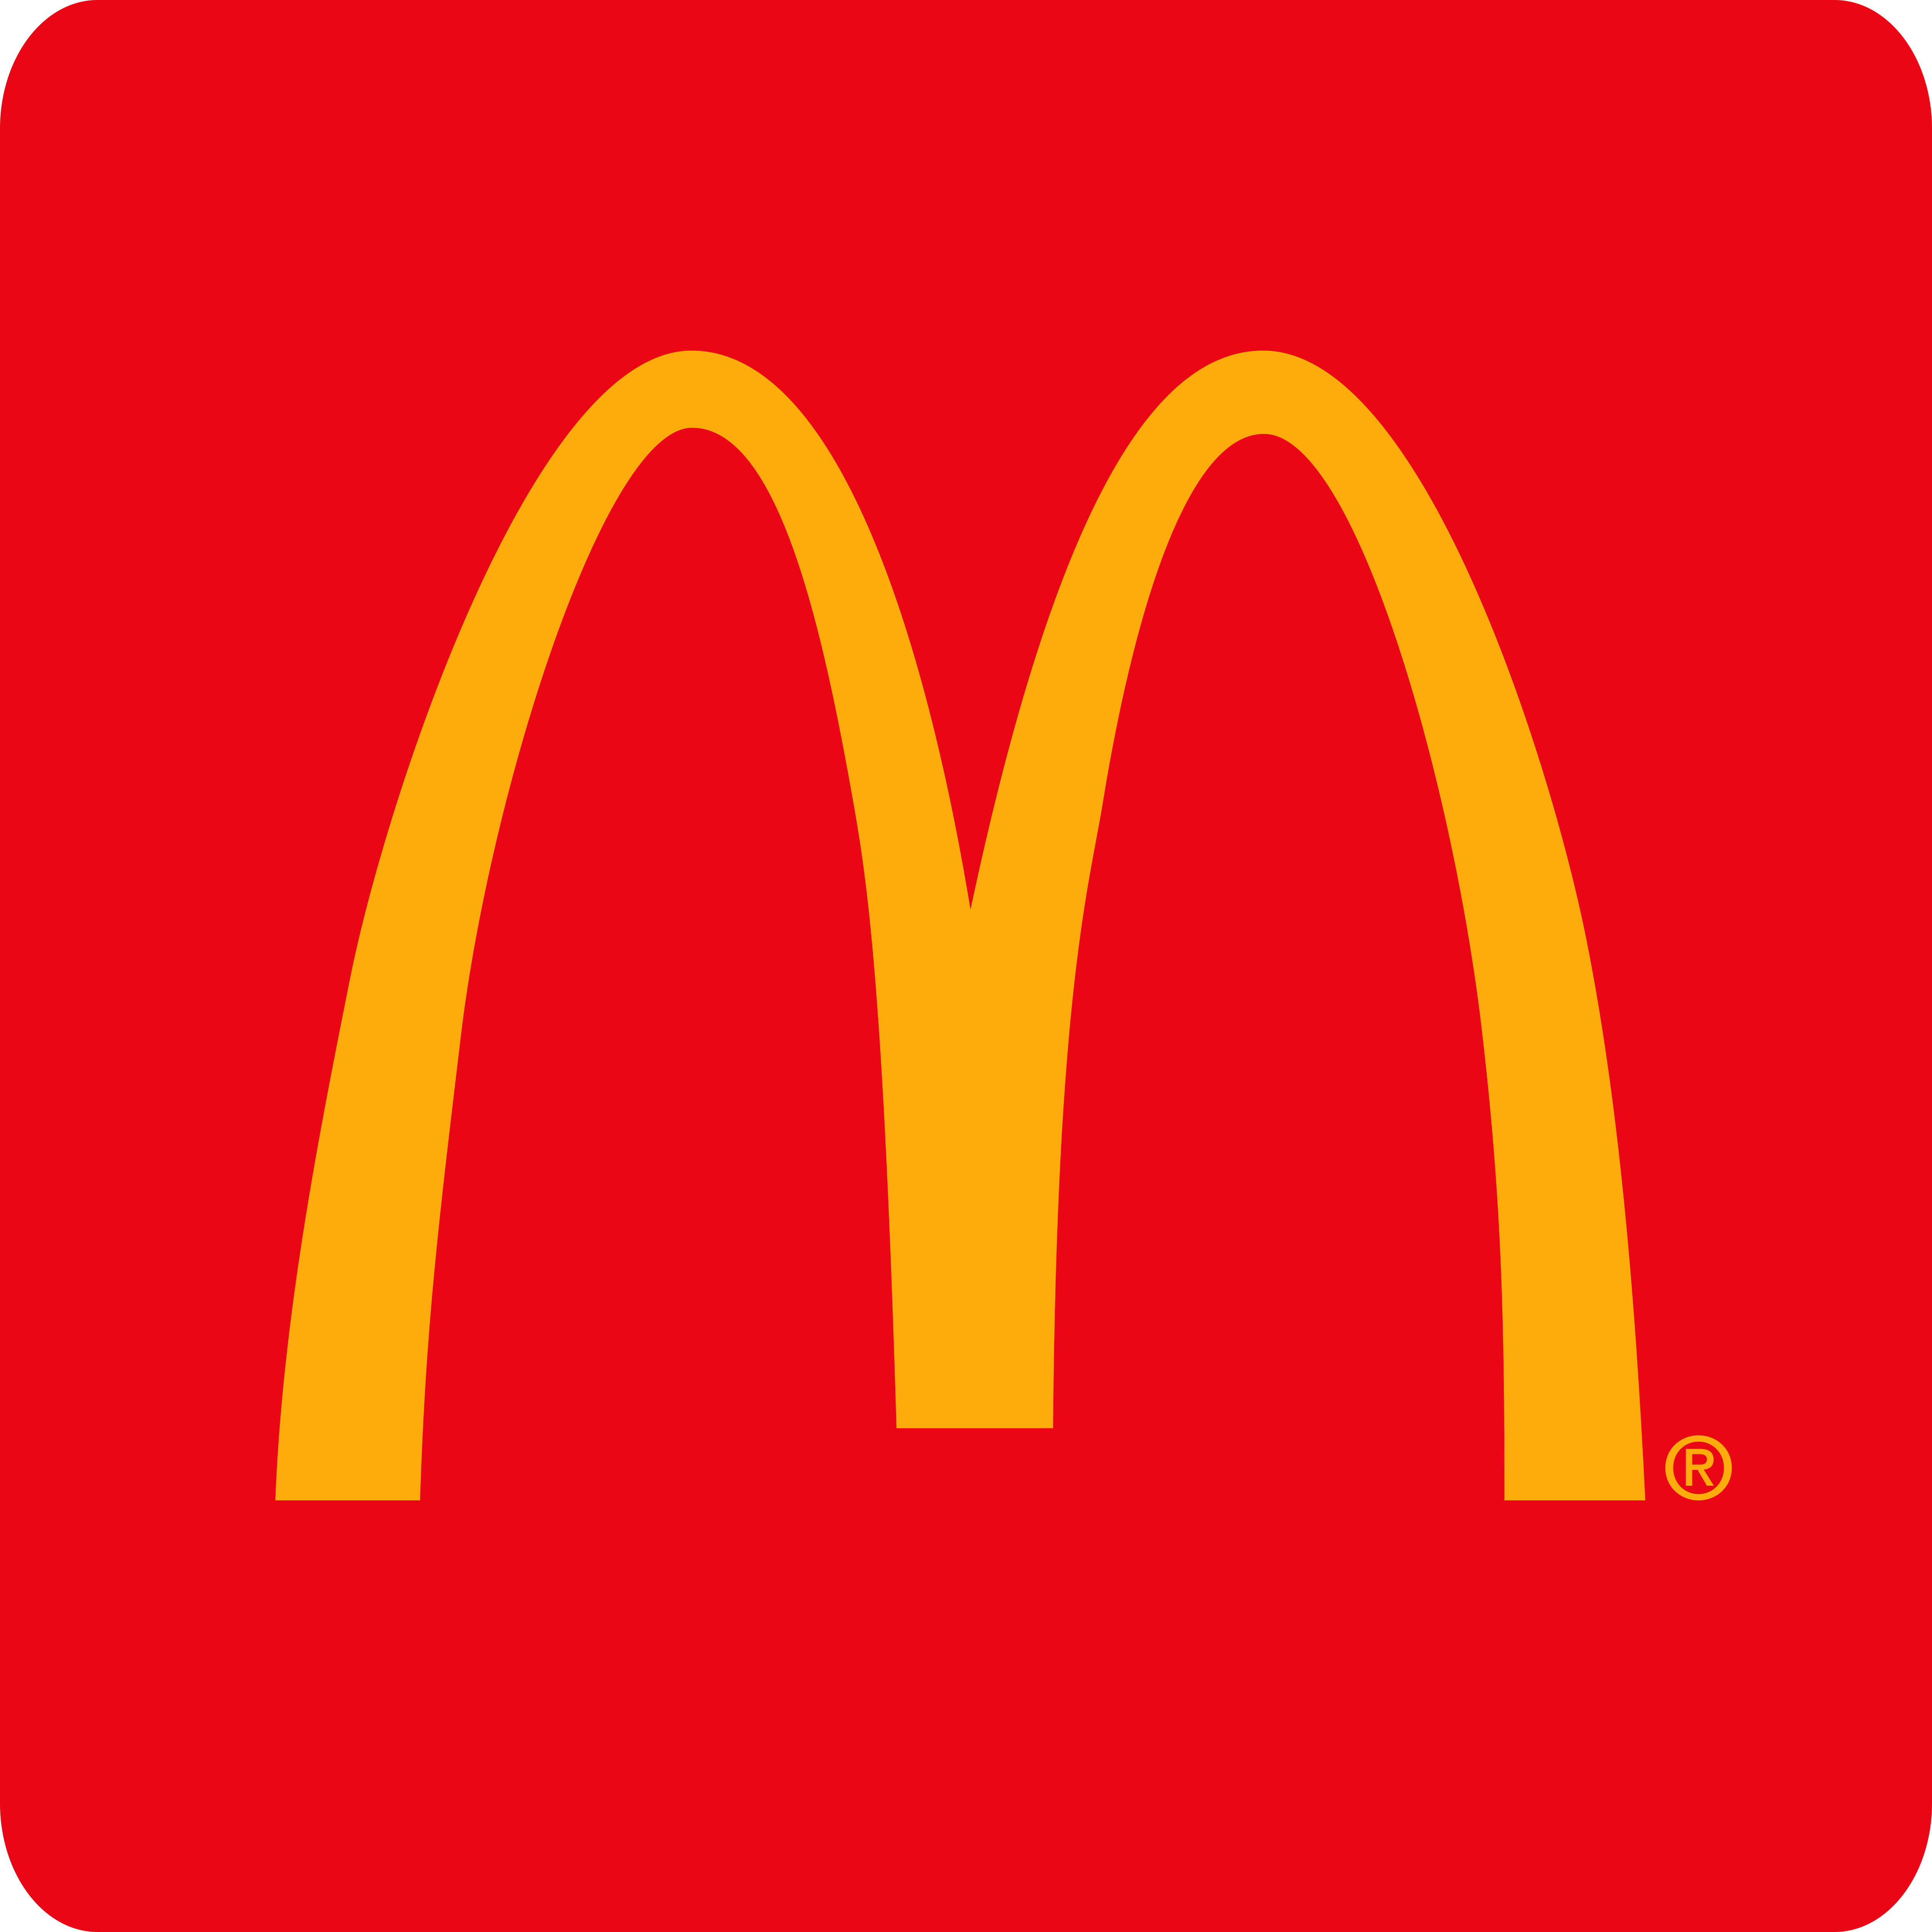 Mcdonald s logo. Носители фирменный стиль компании макдональдс. Лого Макдональдса 1975. Значок макдональдс. MCDONALD'S логотип 2021.